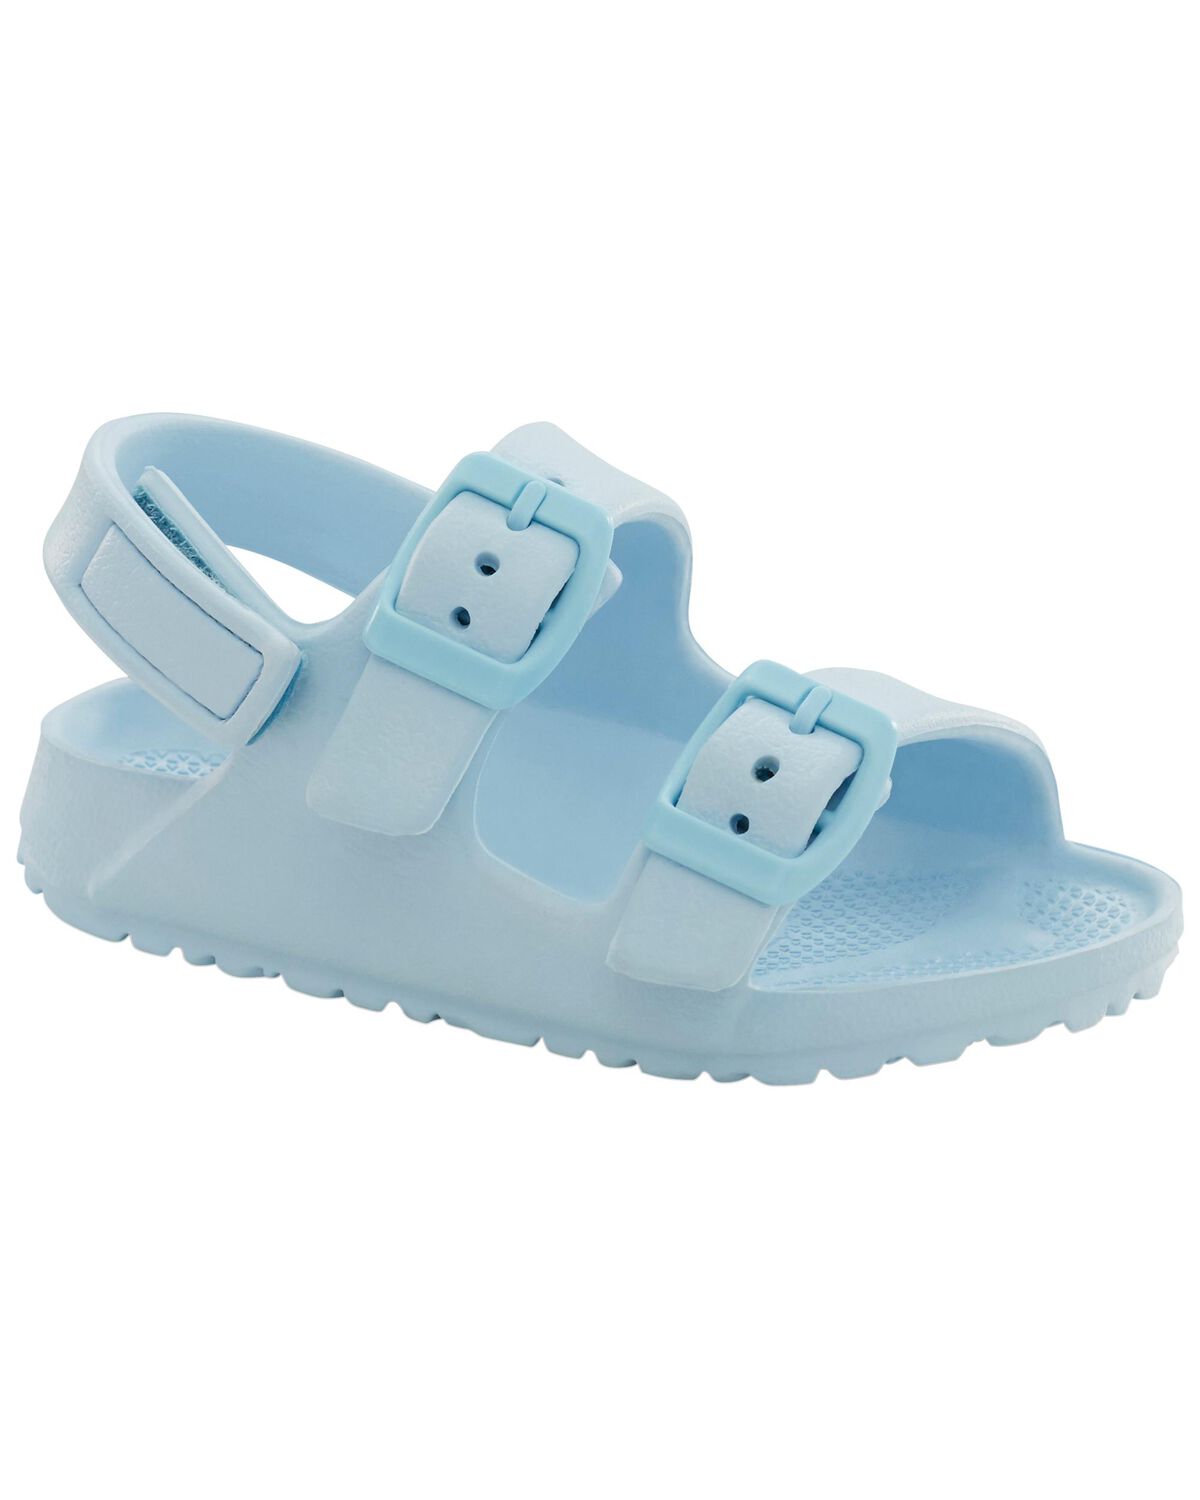 Blue Toddler Casual Sandals | oshkosh.com